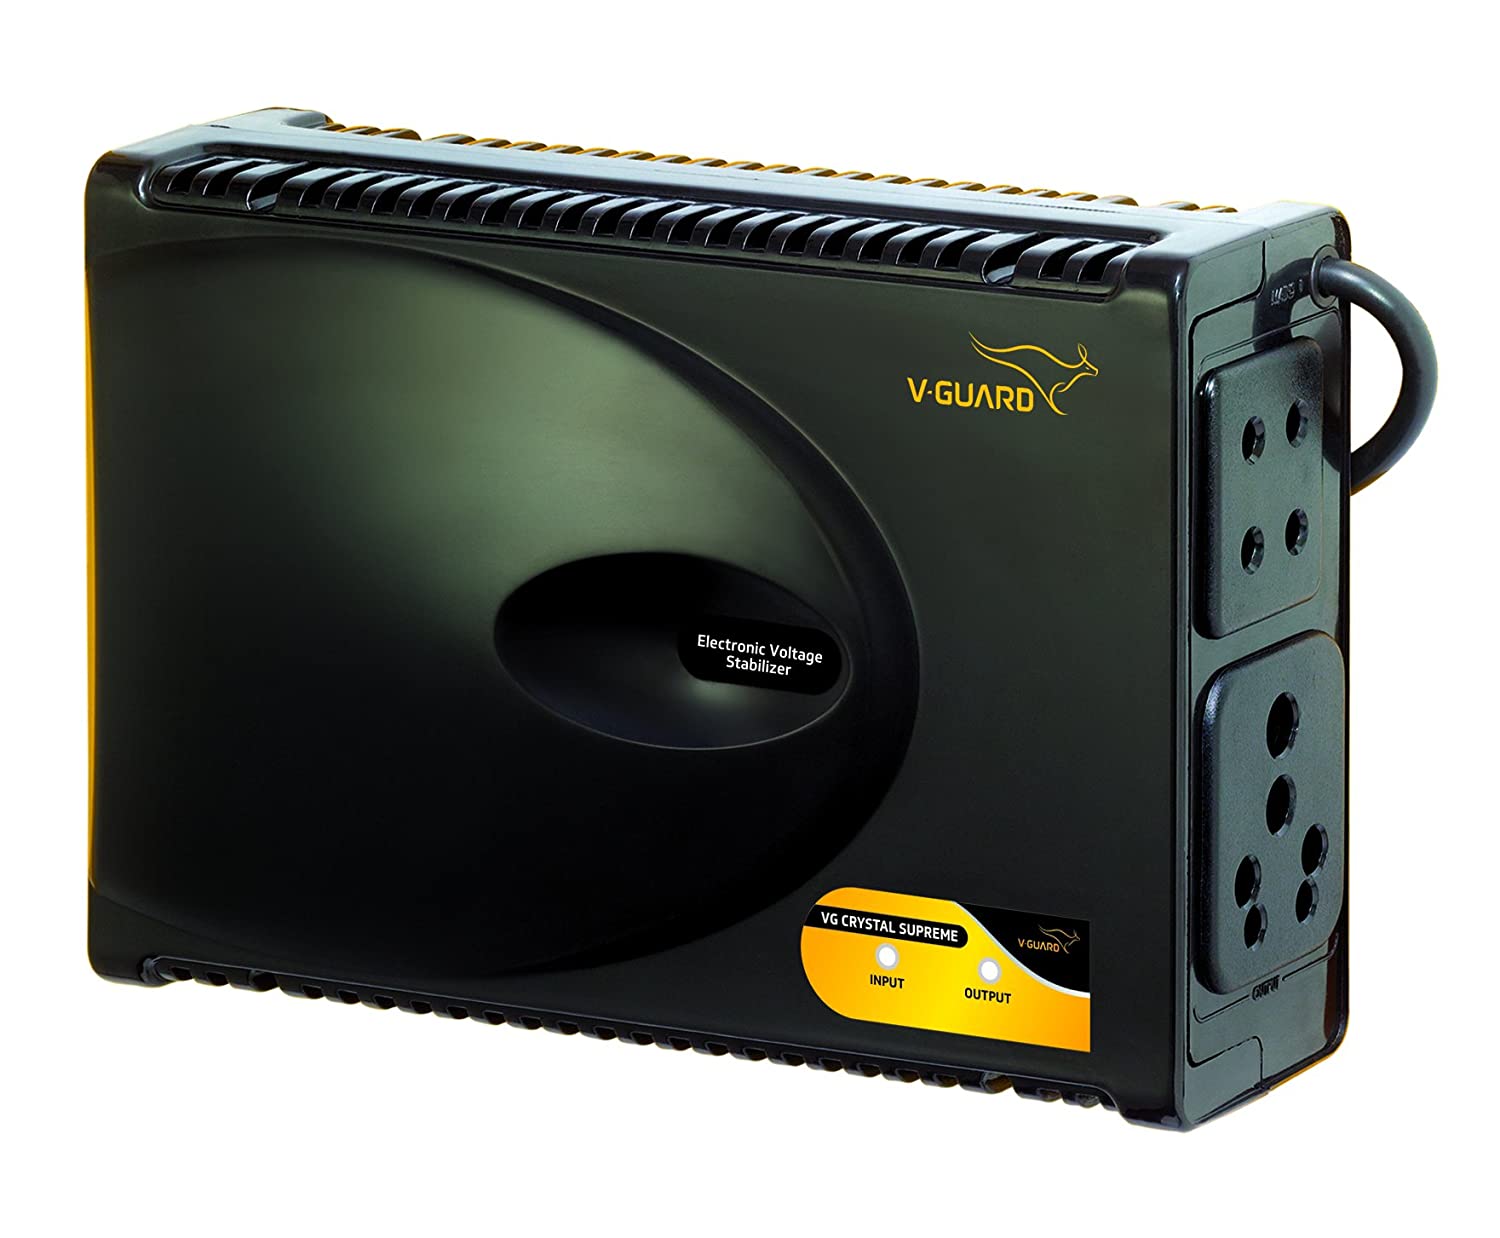 V-Guard VG Crystal Supreme for 82 cm (32) TV + Set topbox + Home Theatre (Working Range: 90-290V ; 2 A)